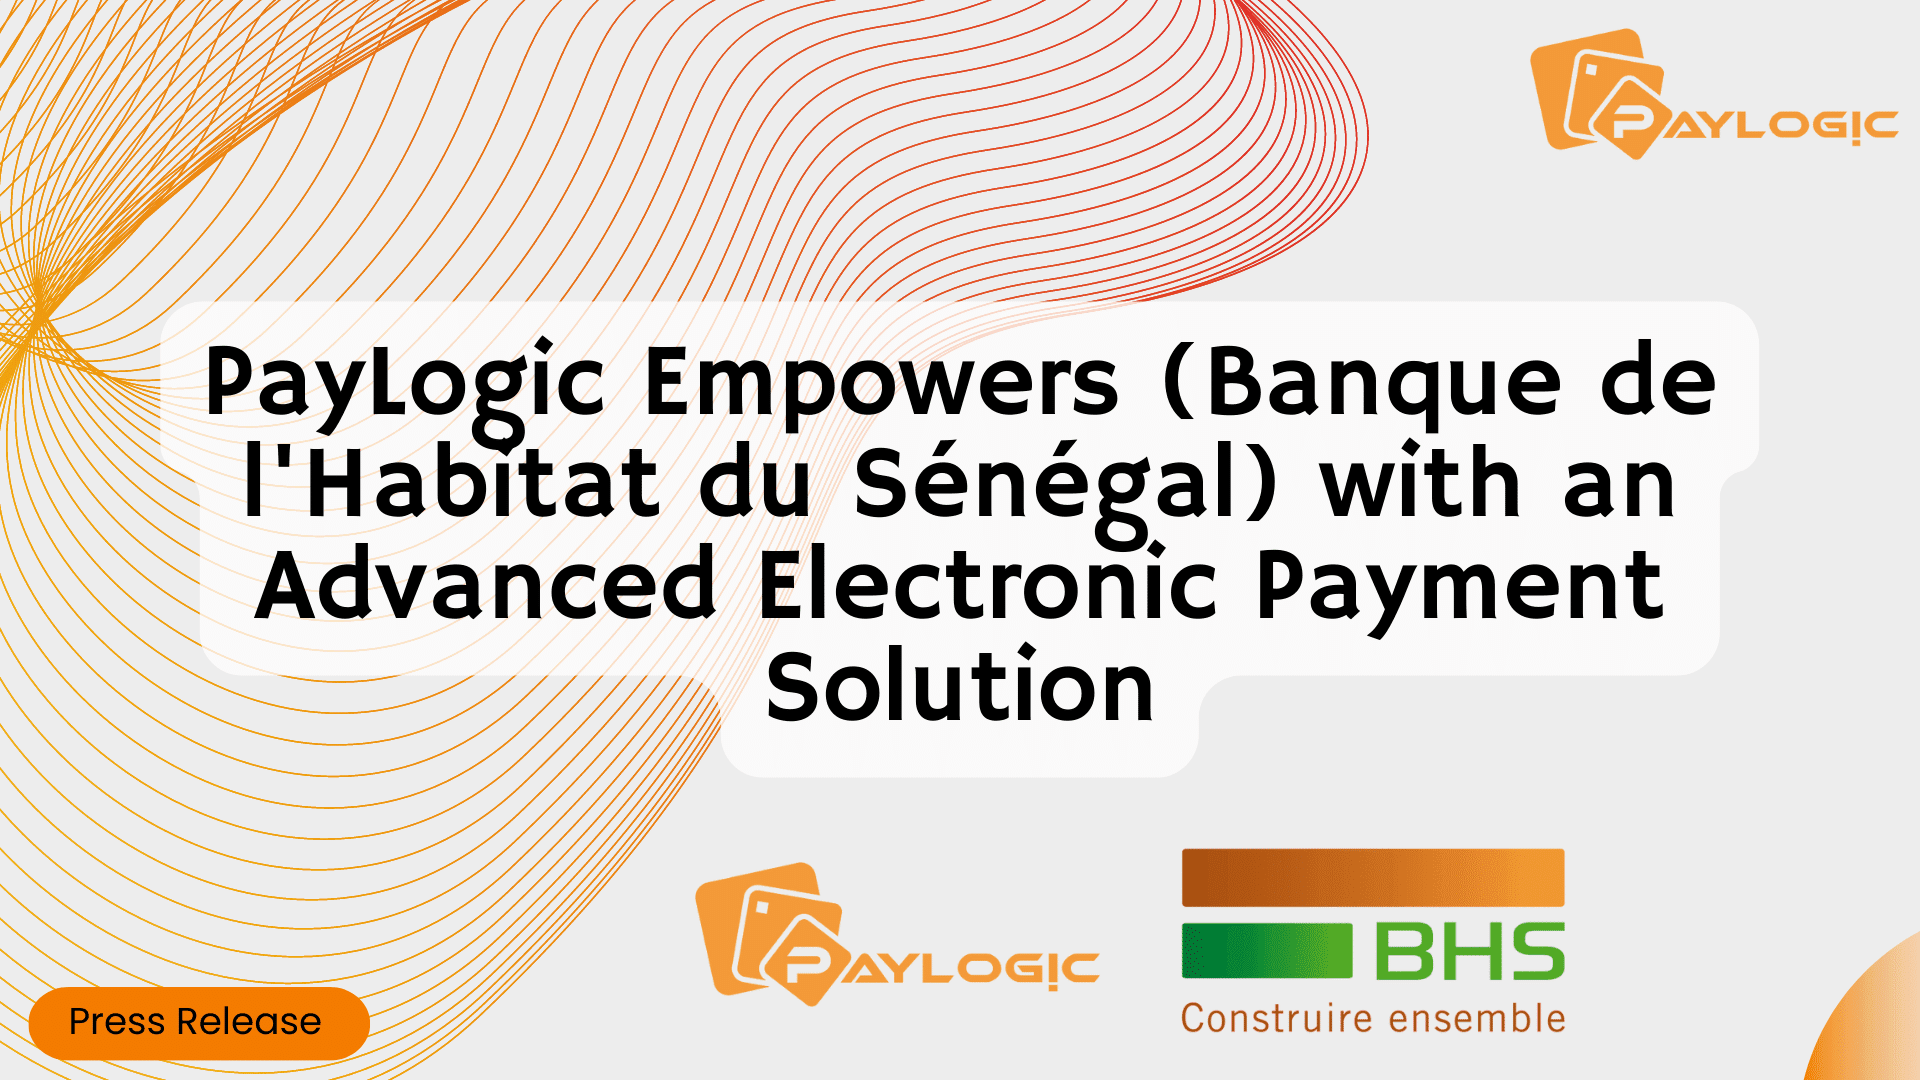 PayLogic Empowers Banque de l’Habitat du Sénégal with Advanced Electronic Payment Solution